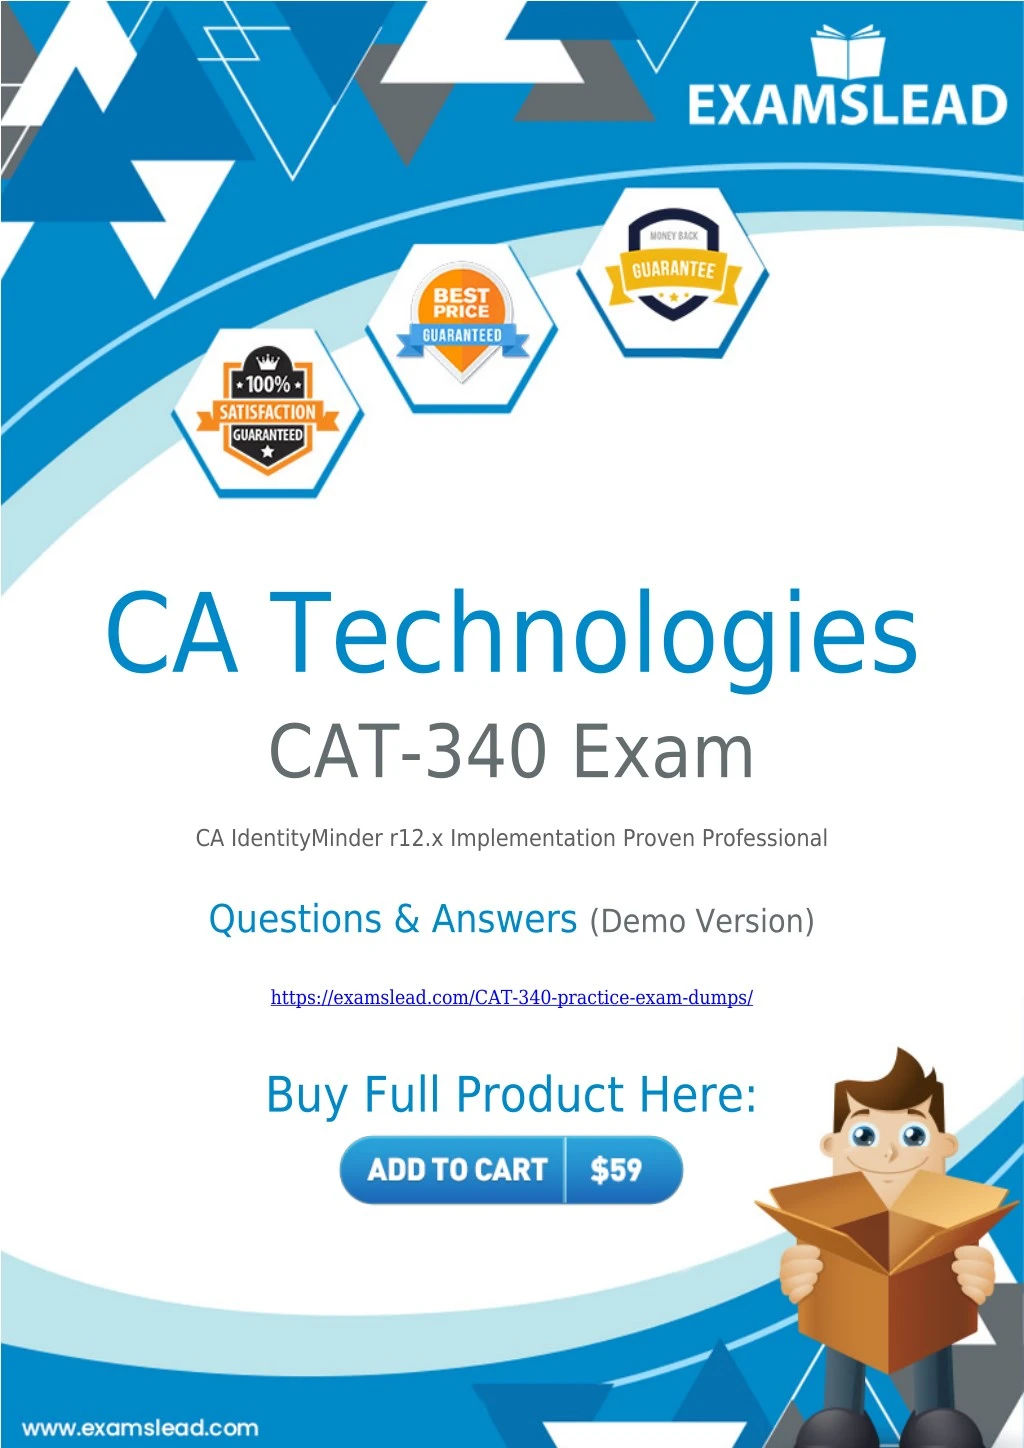 ca technologies cat 340 exam